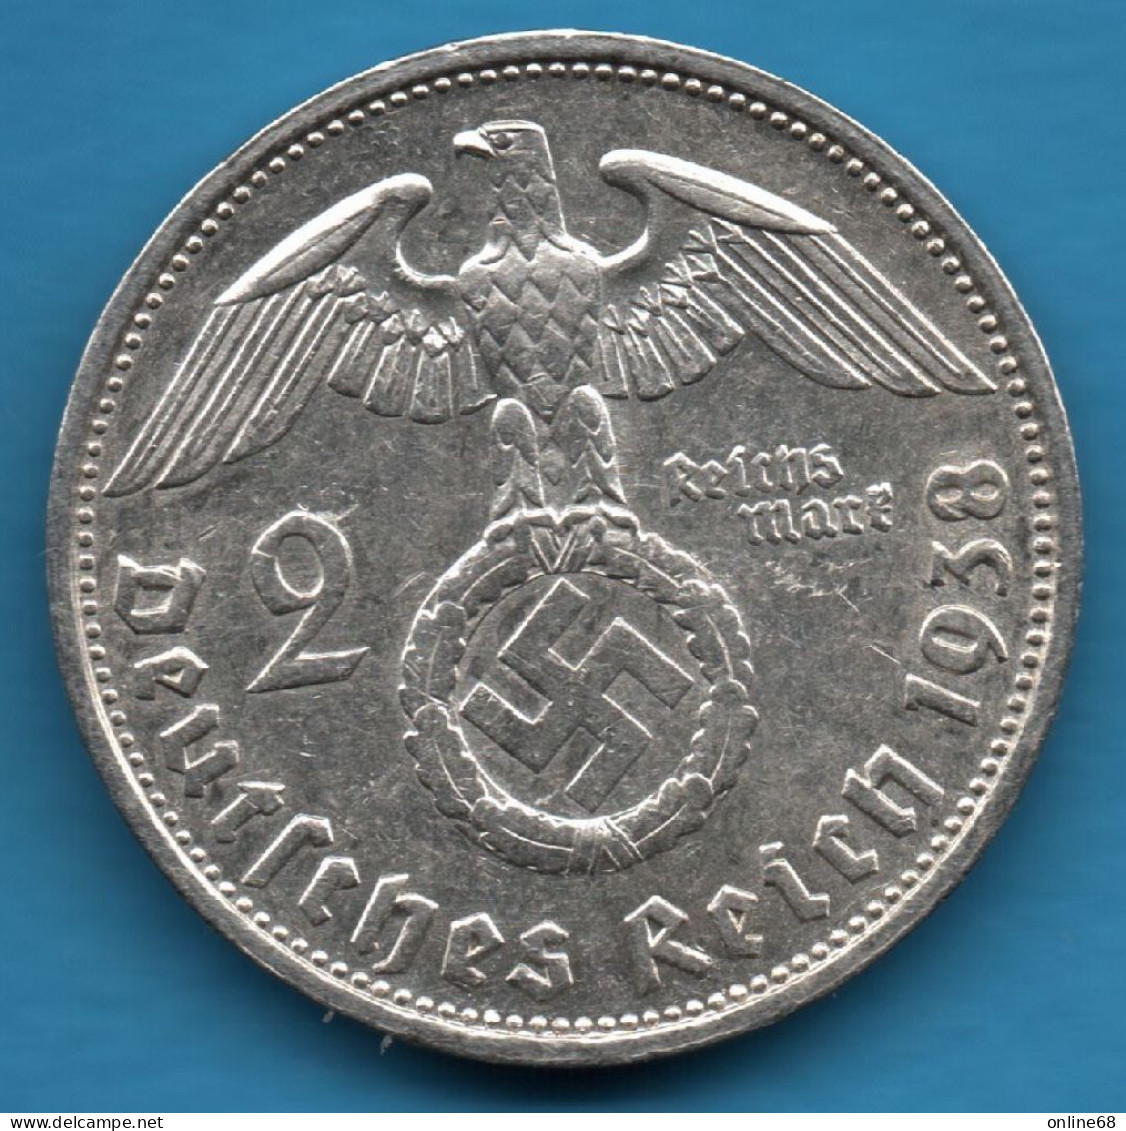 DEUTSCHES REICH 2 REICHSMARK 1938 G KM# 93 Argent 625‰ Silver Paul Von Hindenburg Svastika - 2 Reichsmark